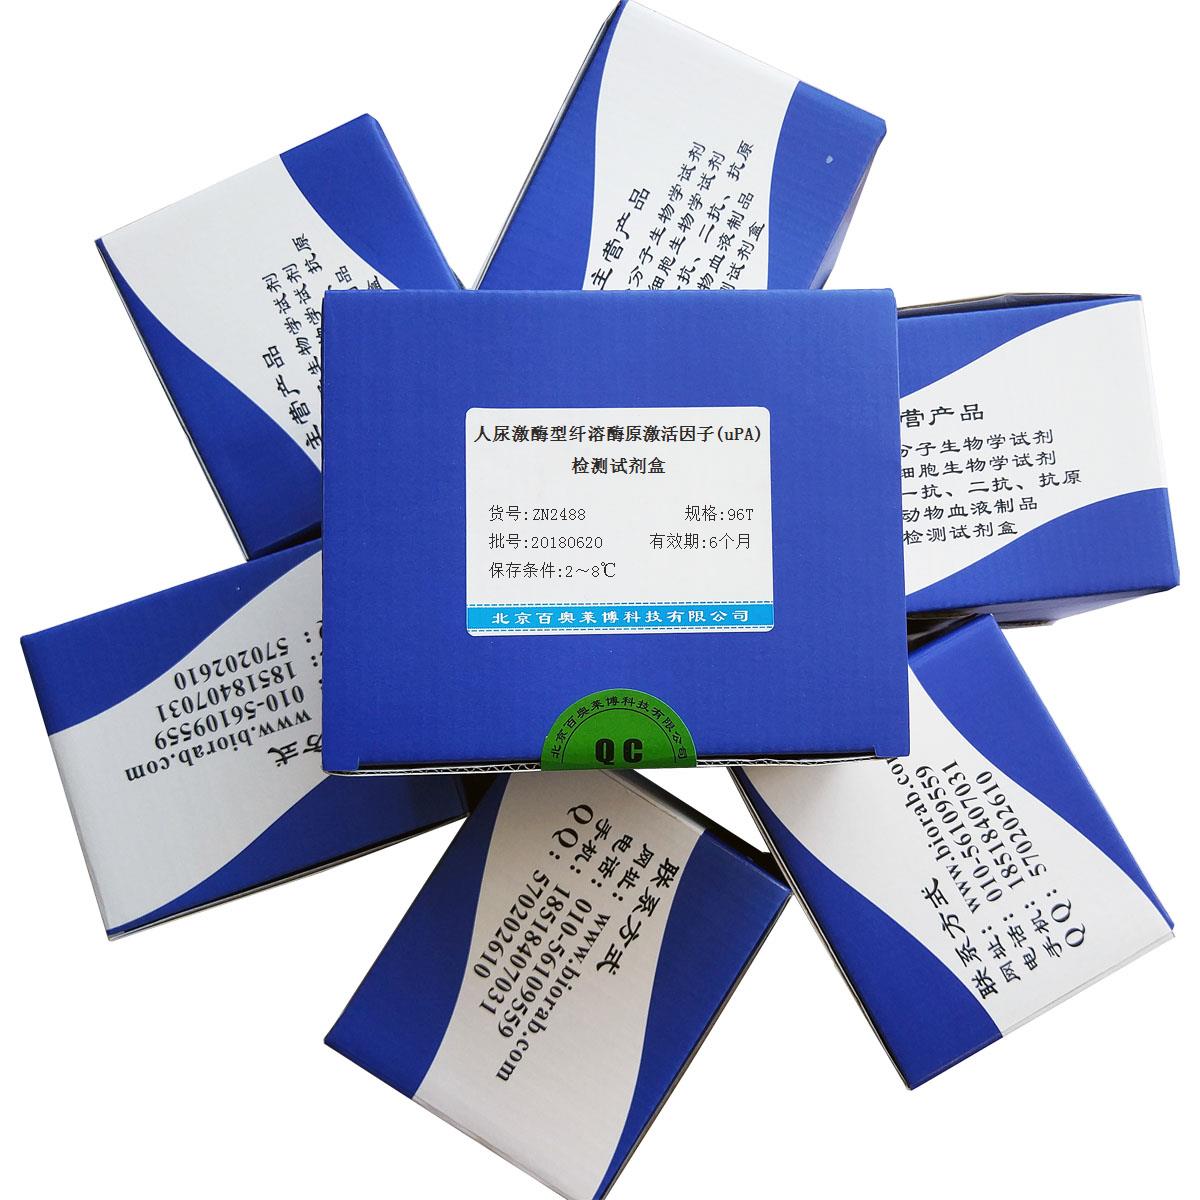 北京人尿激酶型纤溶酶原激活因子(uPA)检测试剂盒促销